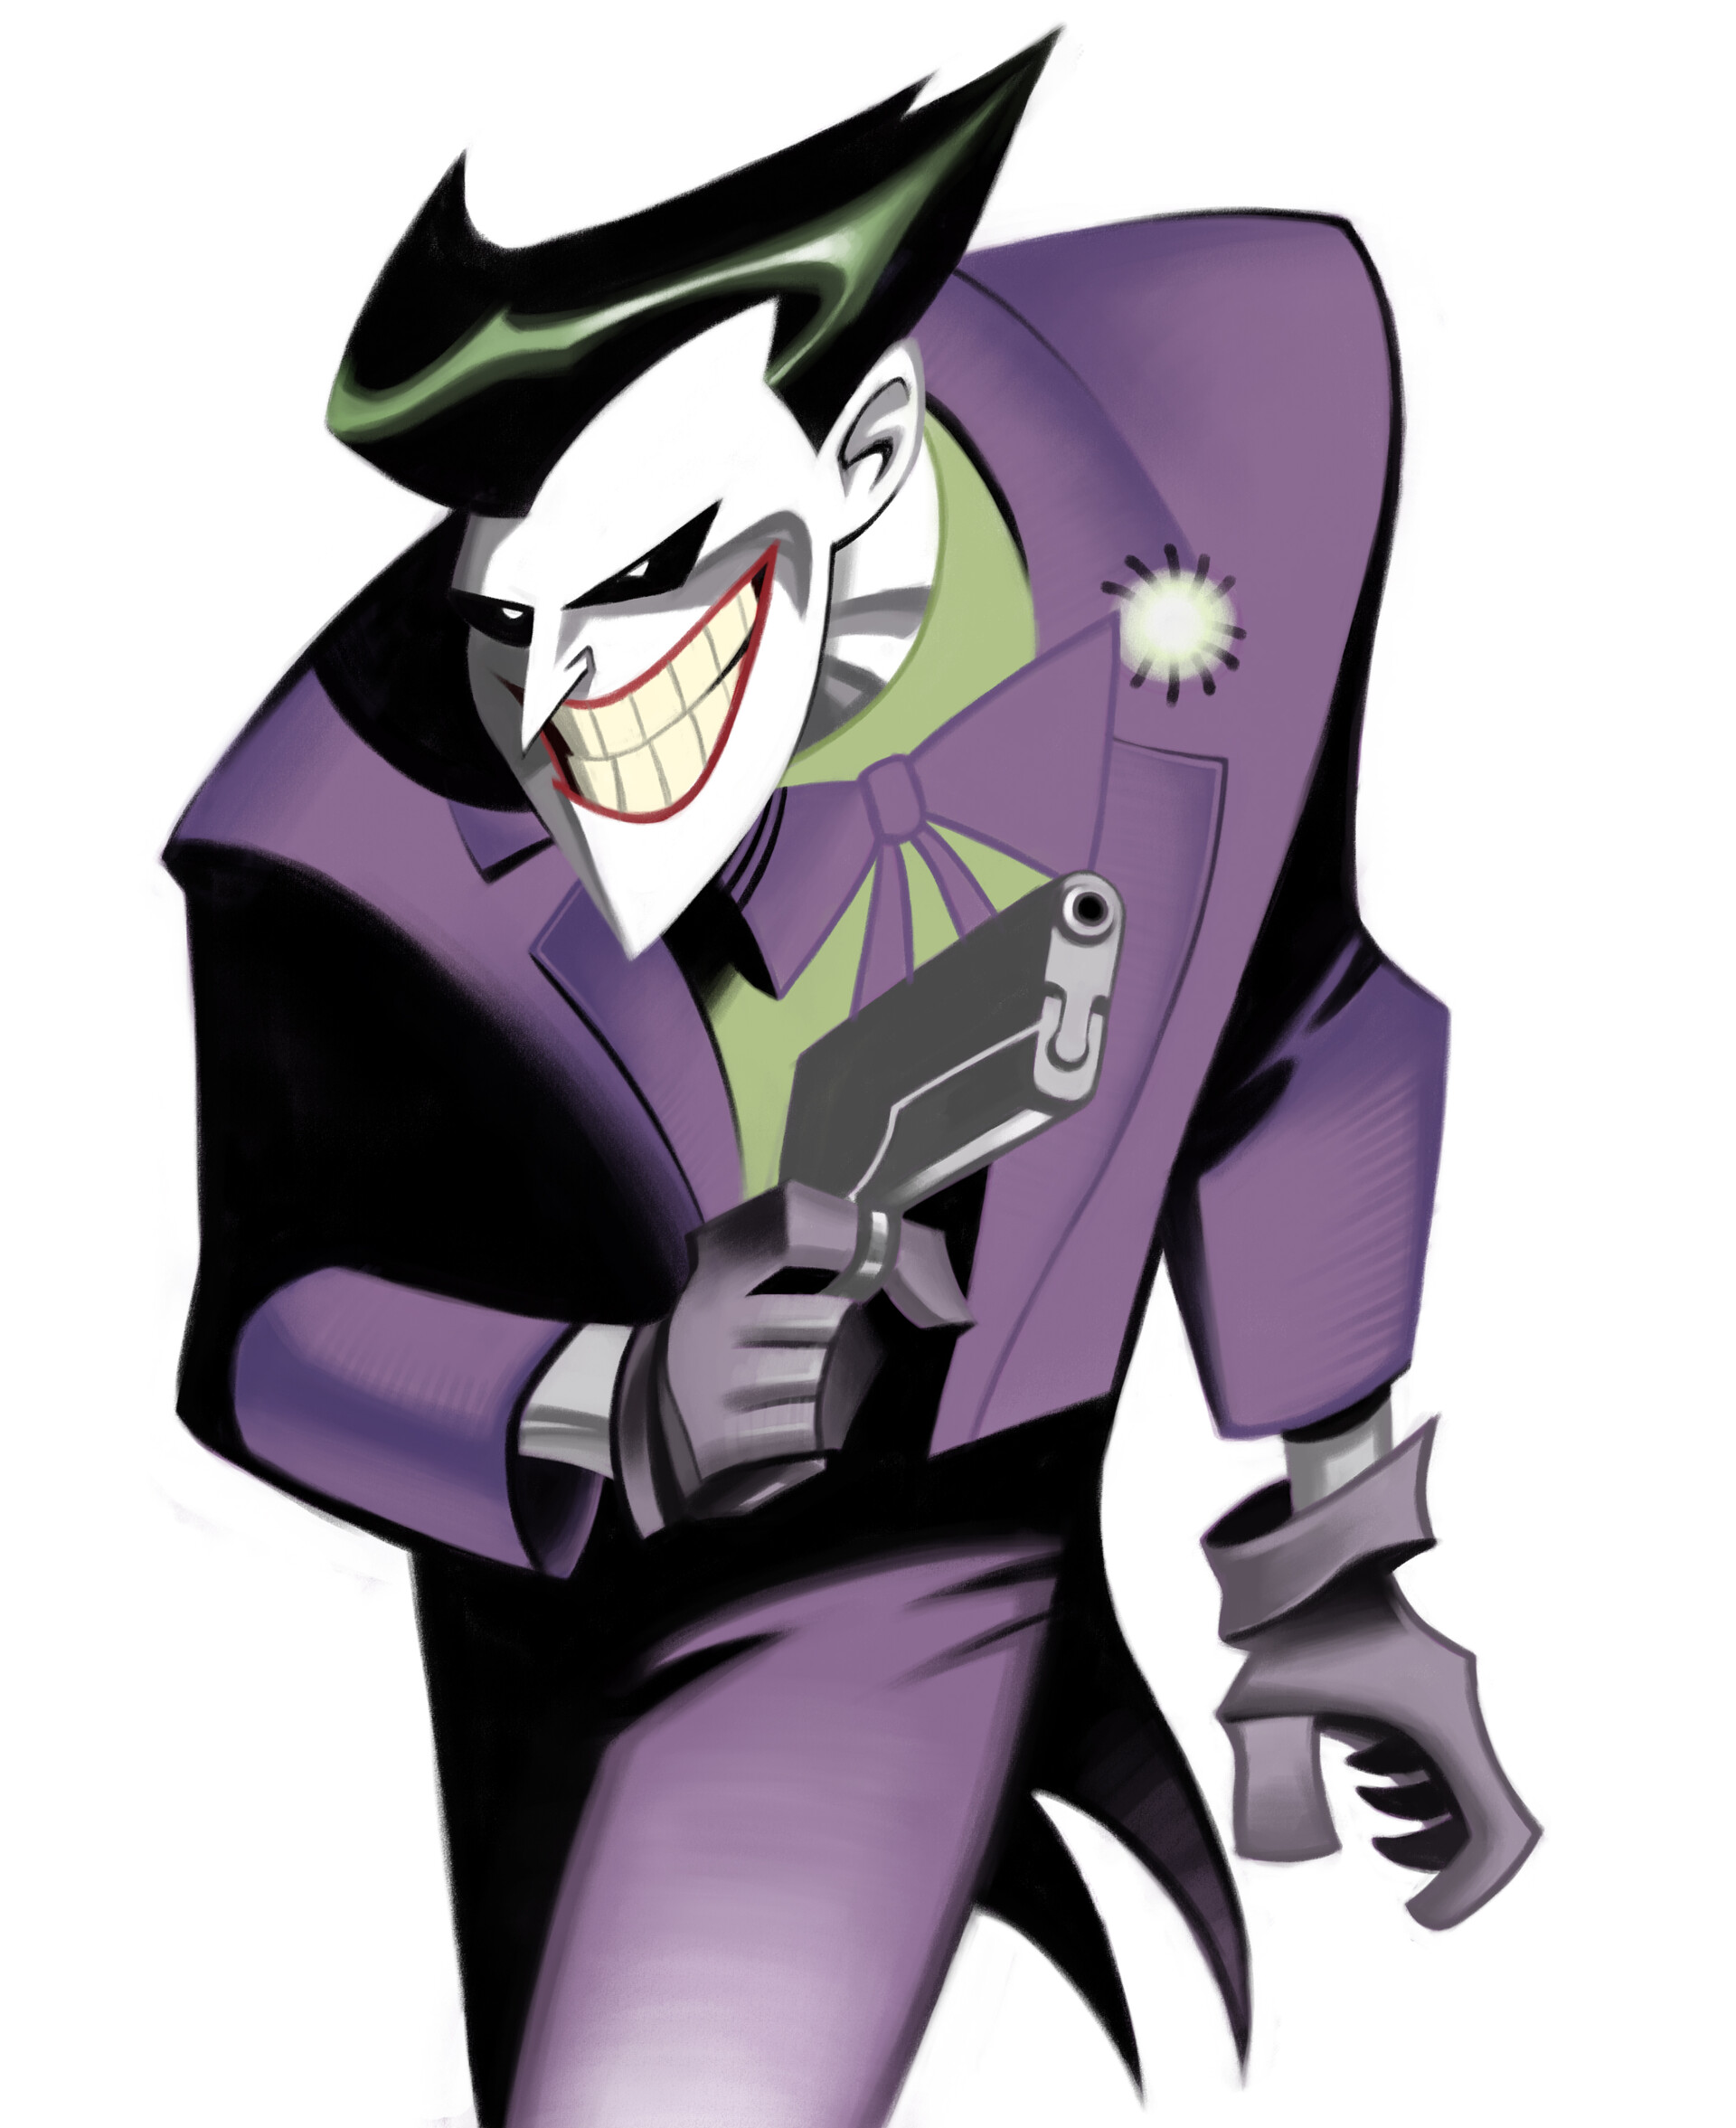 ArtStation - Bruce Timm's Joker